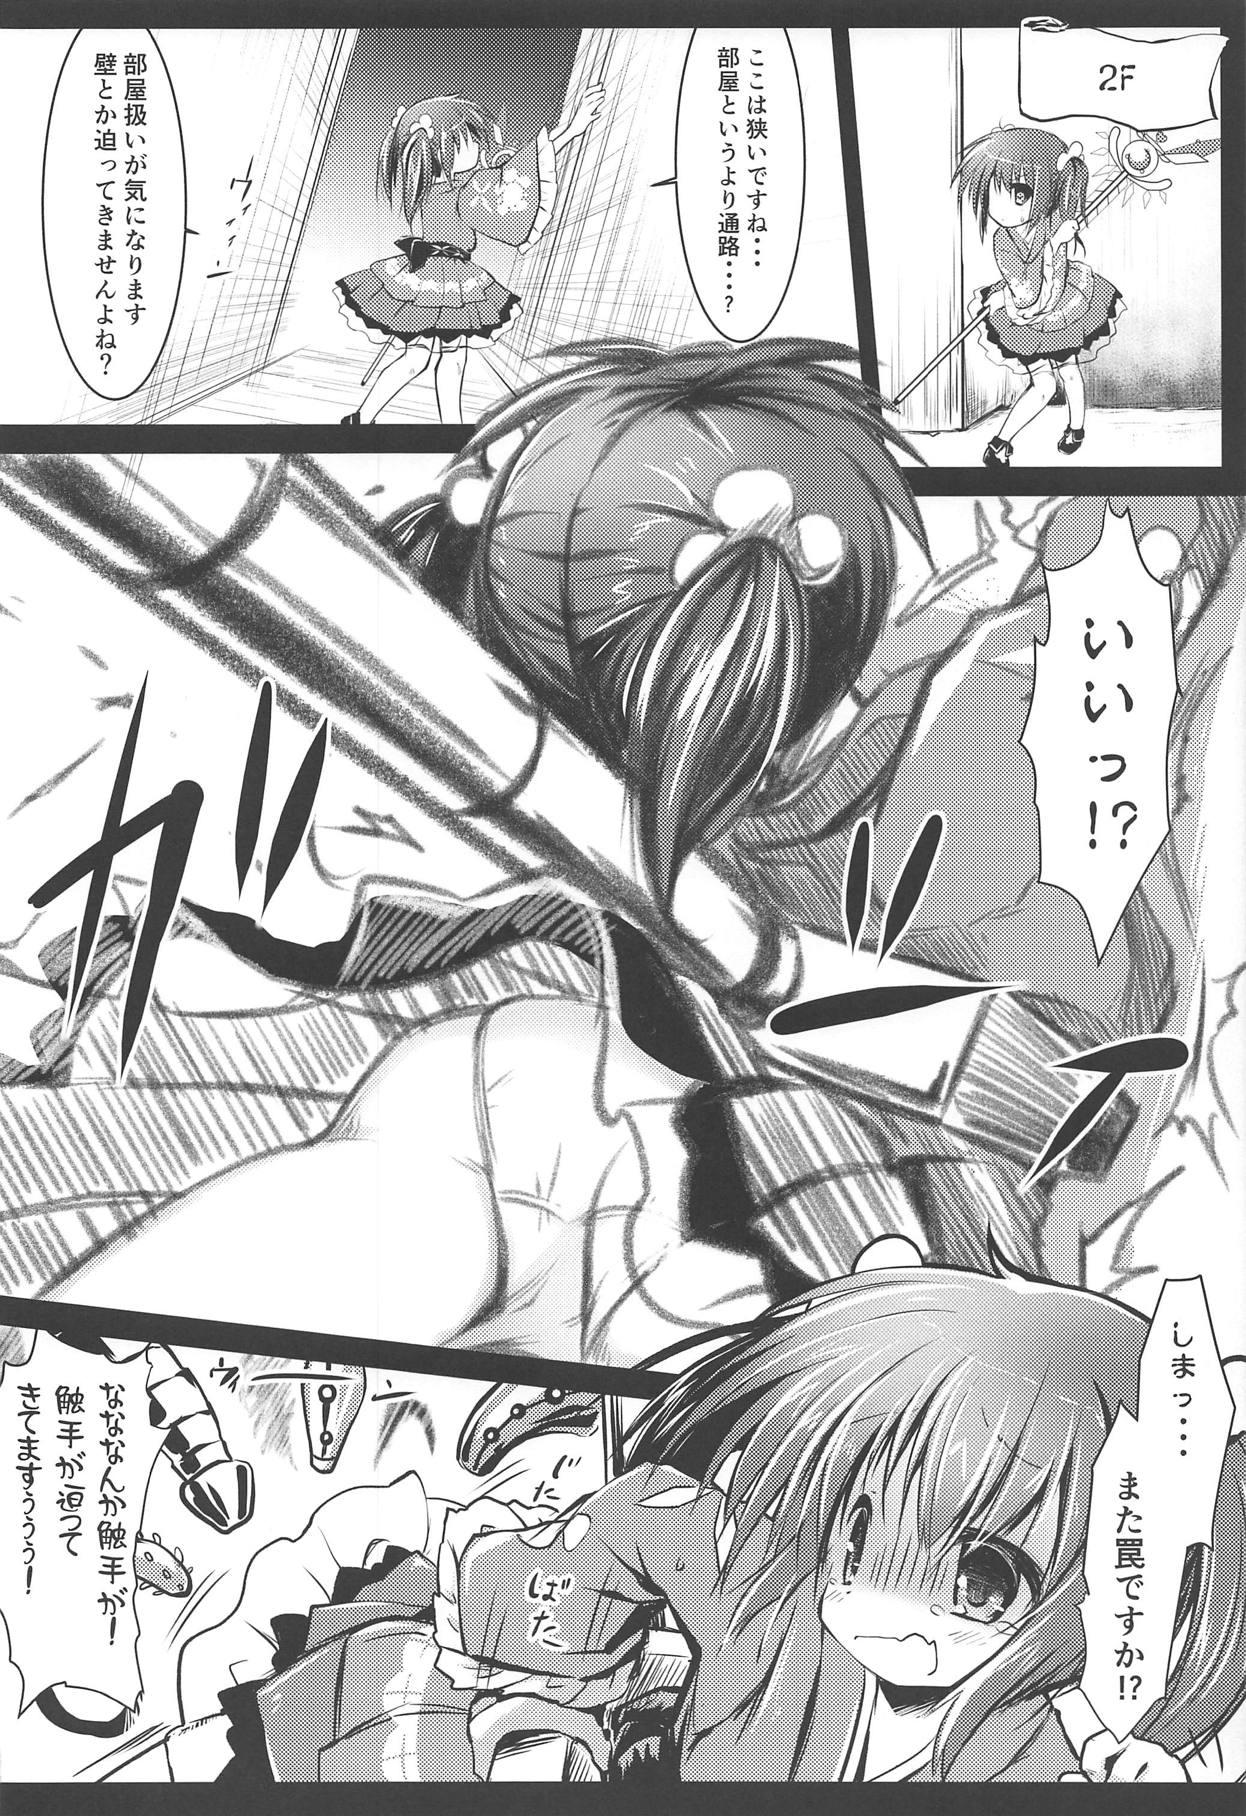 Anal Play Nishikigi VS Ero Trap D - Flower knight girl Rub - Page 7